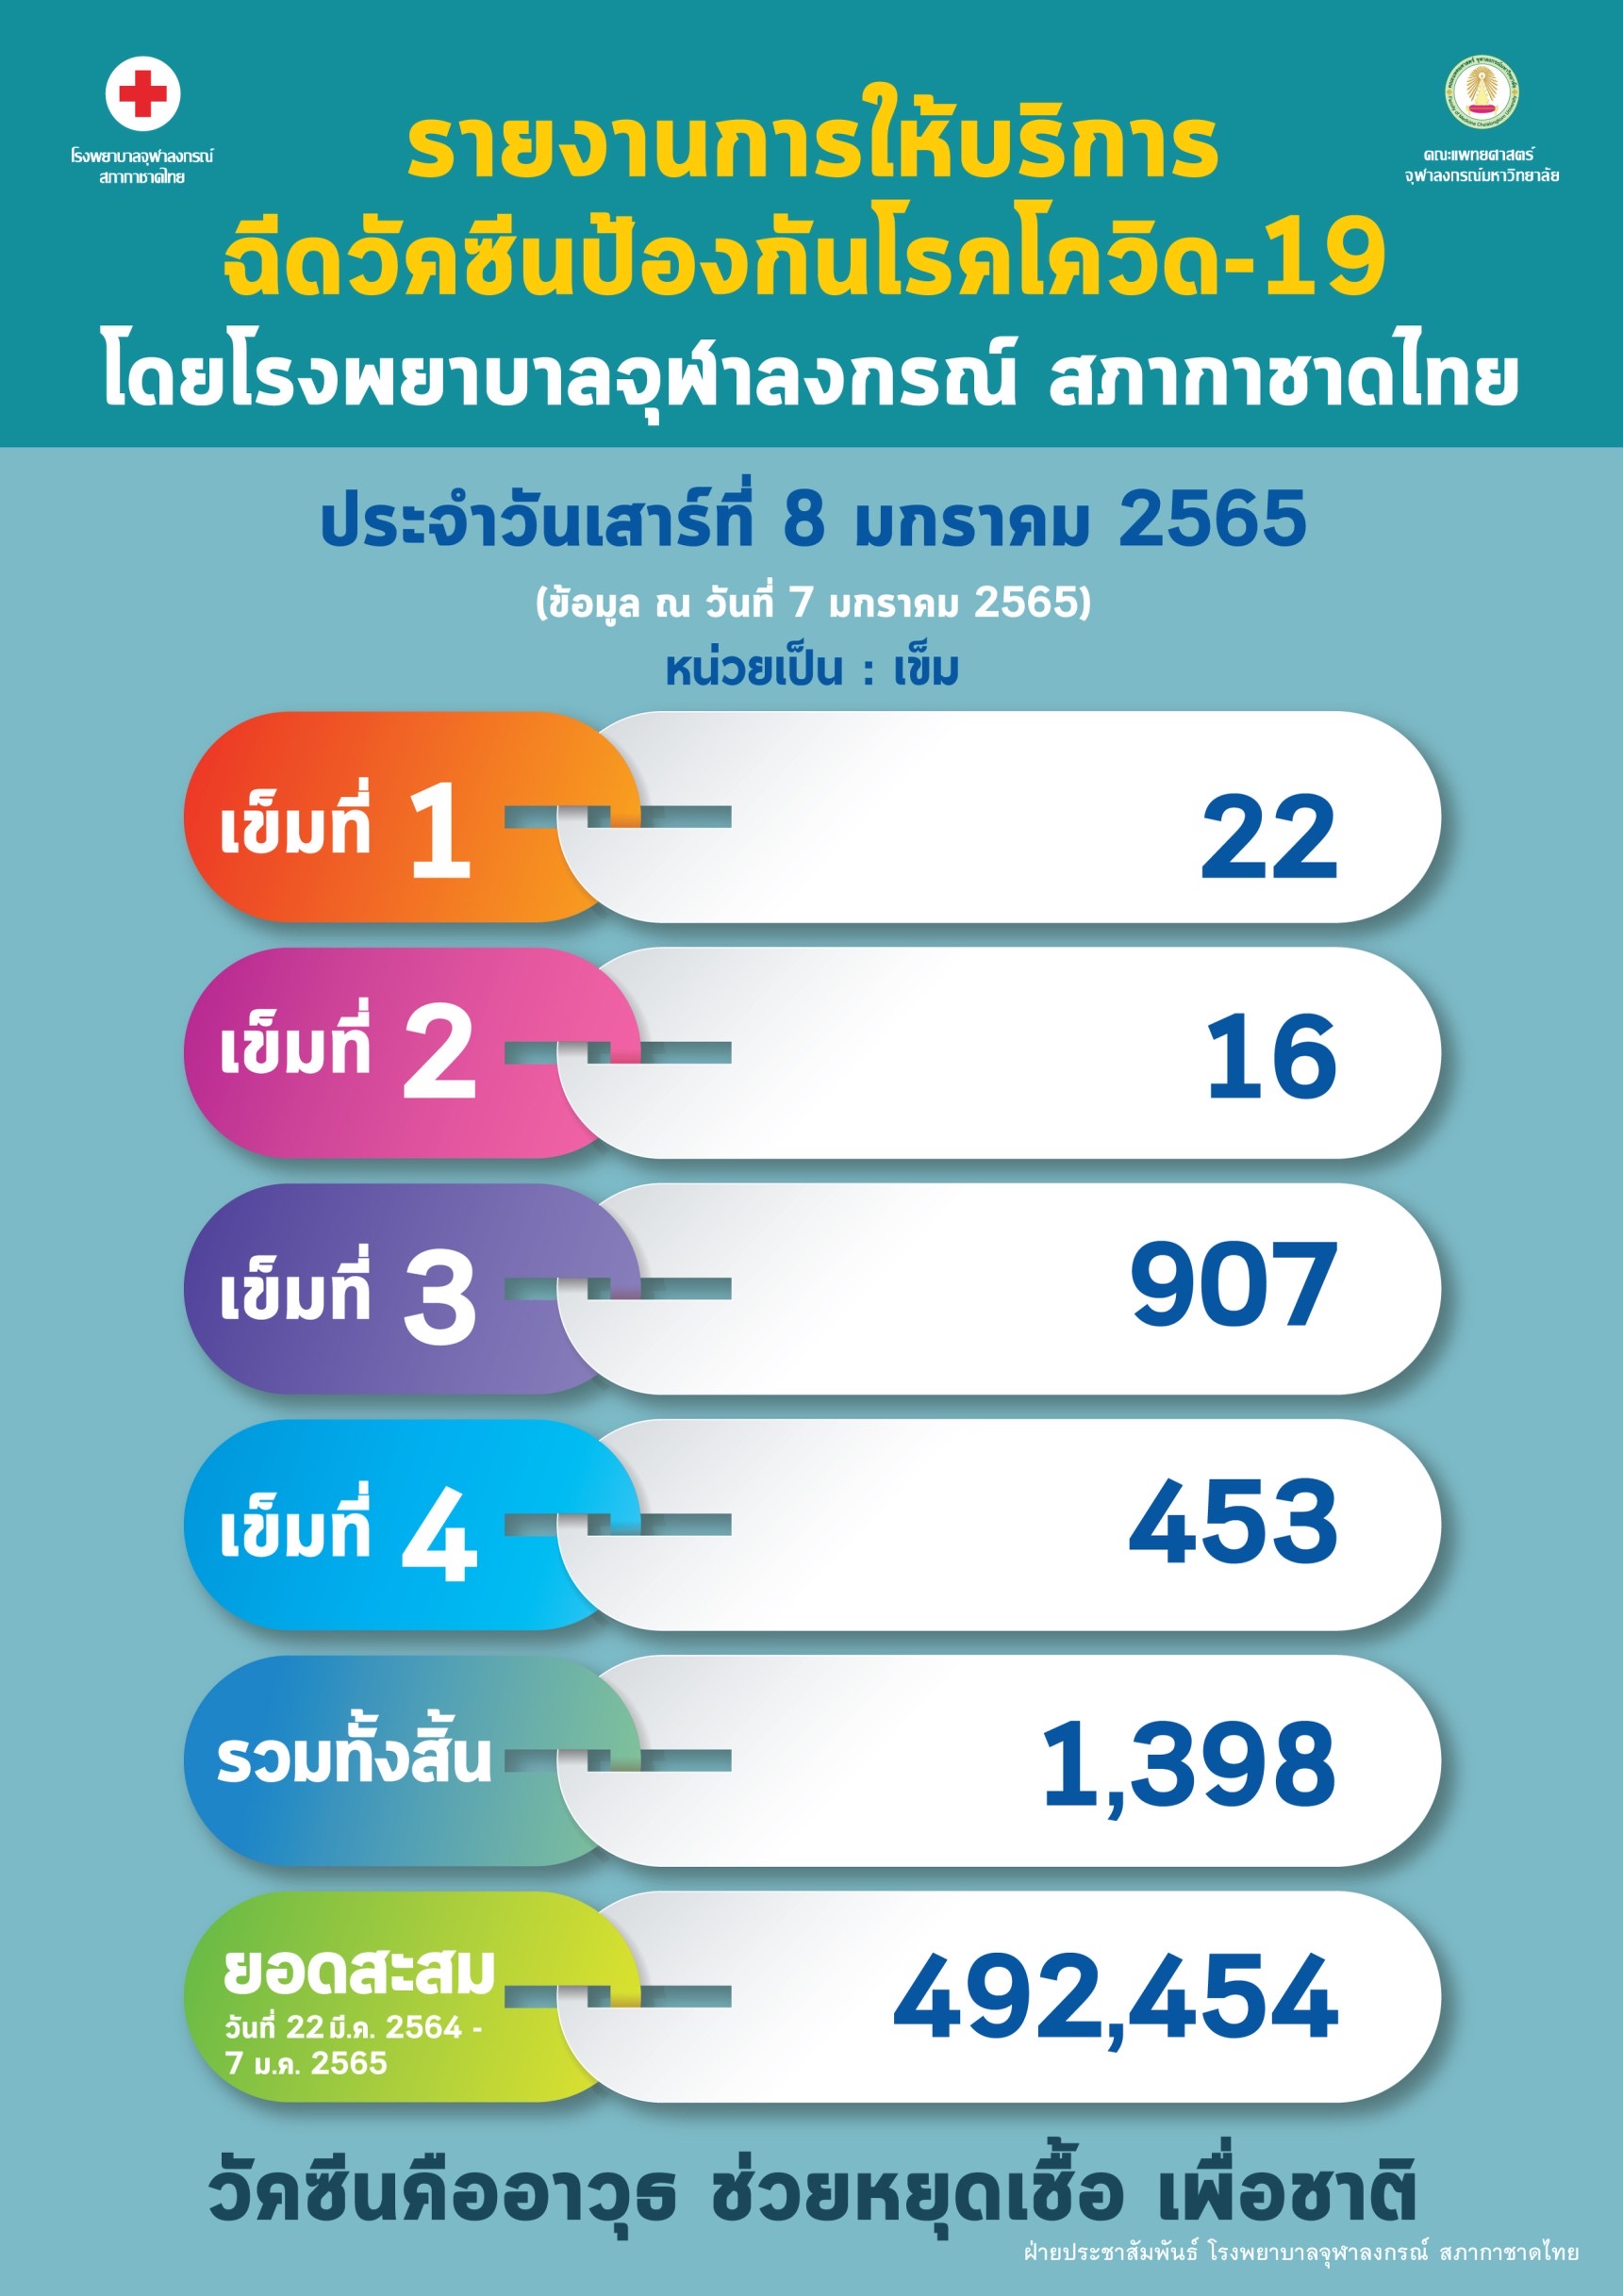 รายงานการให้บริการ ฉีดวัคซีนป้องกันโรคโควิด-19 โดยโรงพยาบาลจุฬาลงกรณ์ สภากาชาดไทย ประจำวันเสาร์ที่ 8 มกราคม 2565